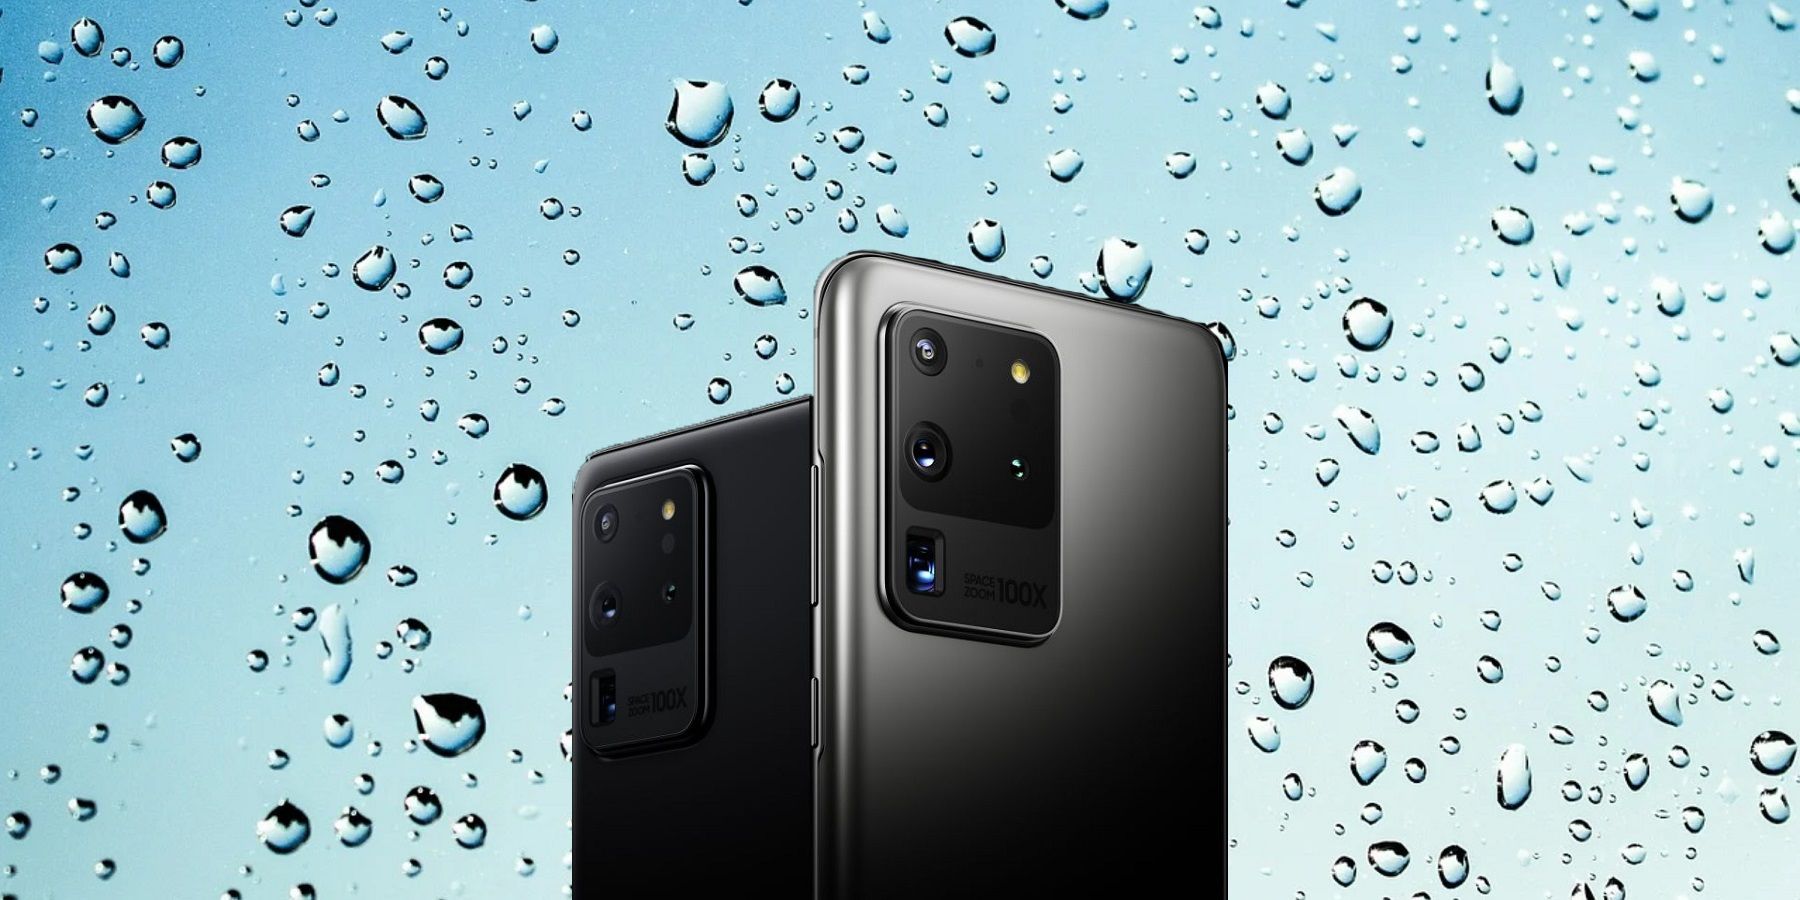 Galaxy S20 / S20+ / S20 Ultra / S20 FE smartphones Waterproof